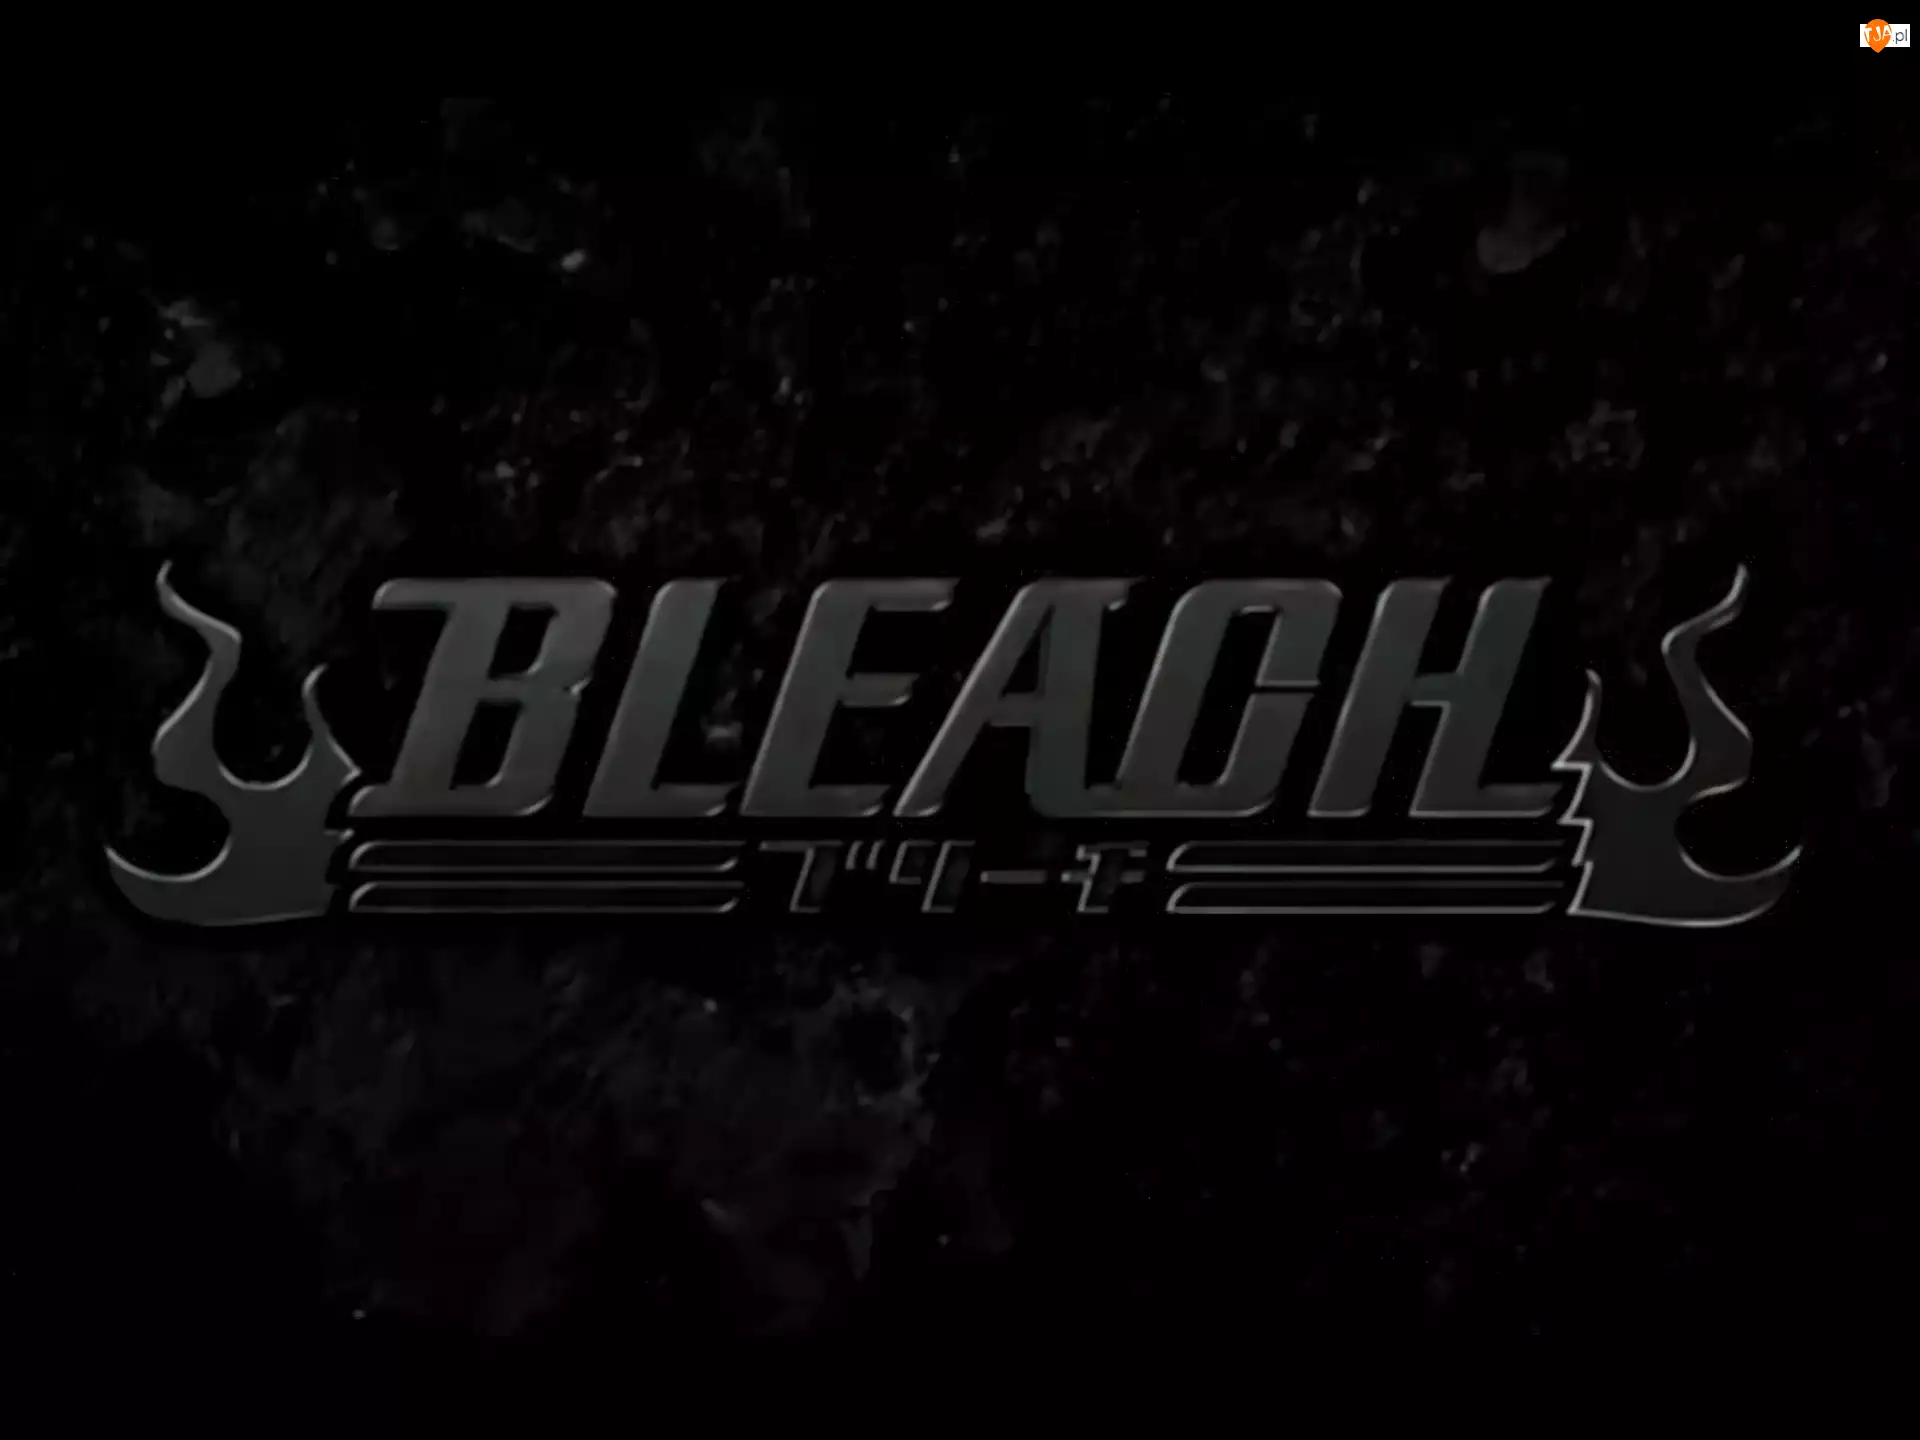 Logo, Bleach